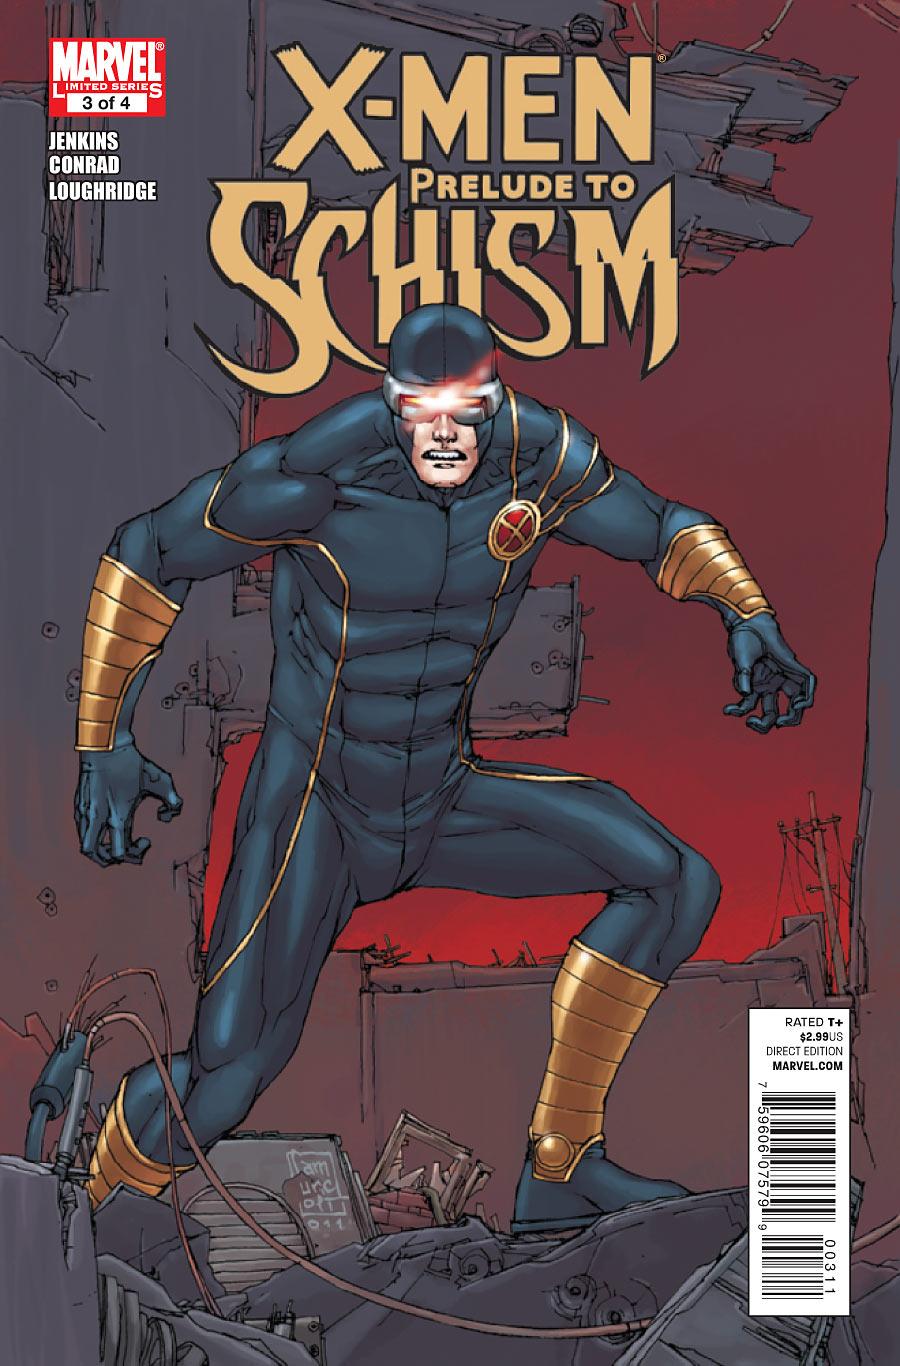 X-Men: Prelude to Schism Vol. 1 #3